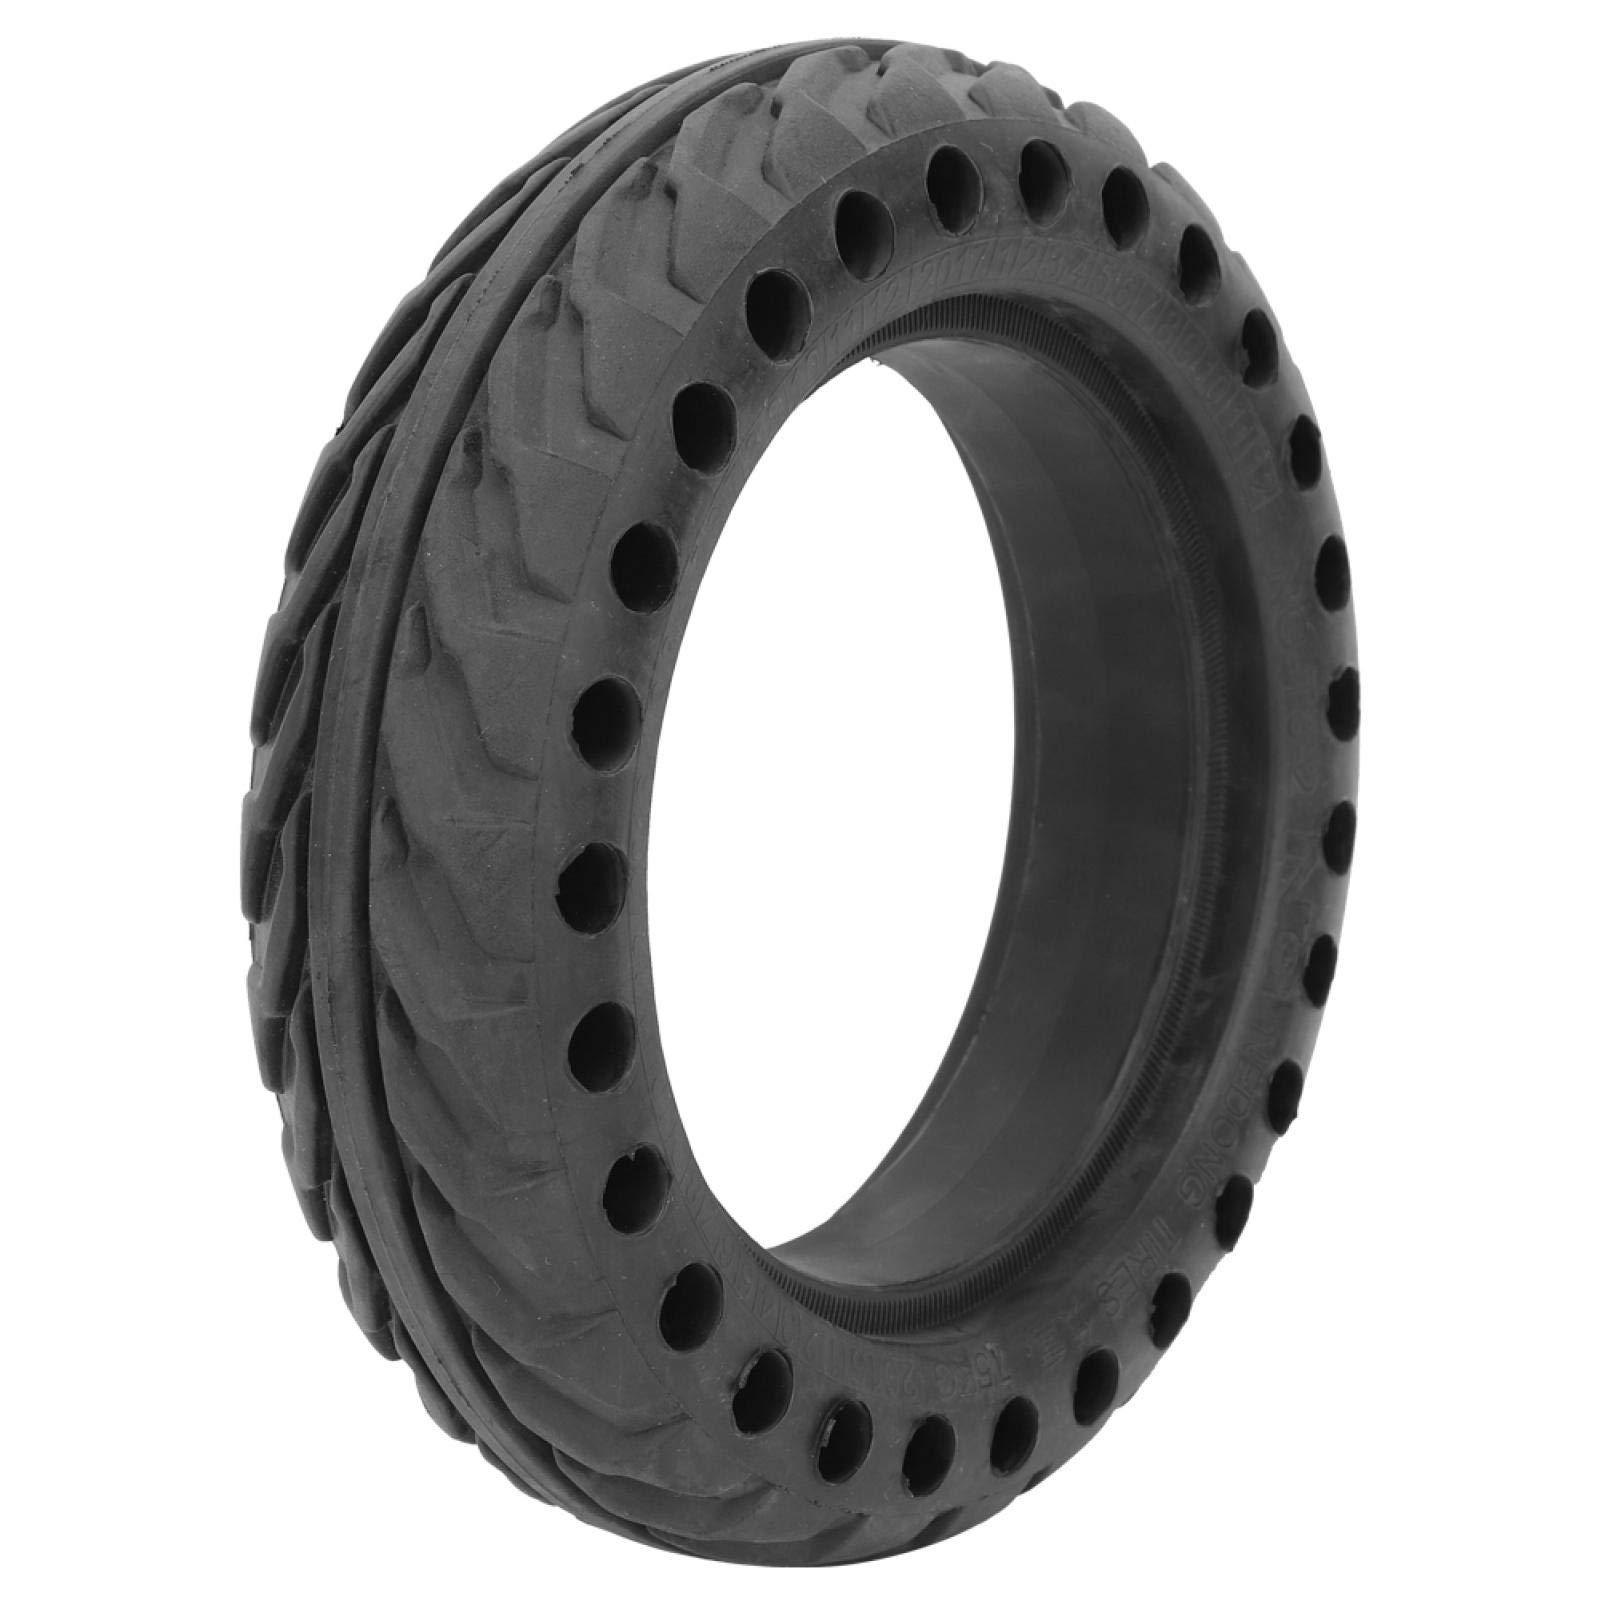 Black Rubber 8 Zoll Elektroroller Reifen Elektroroller Teil für Home Entertainment für Trainingswettbewerb